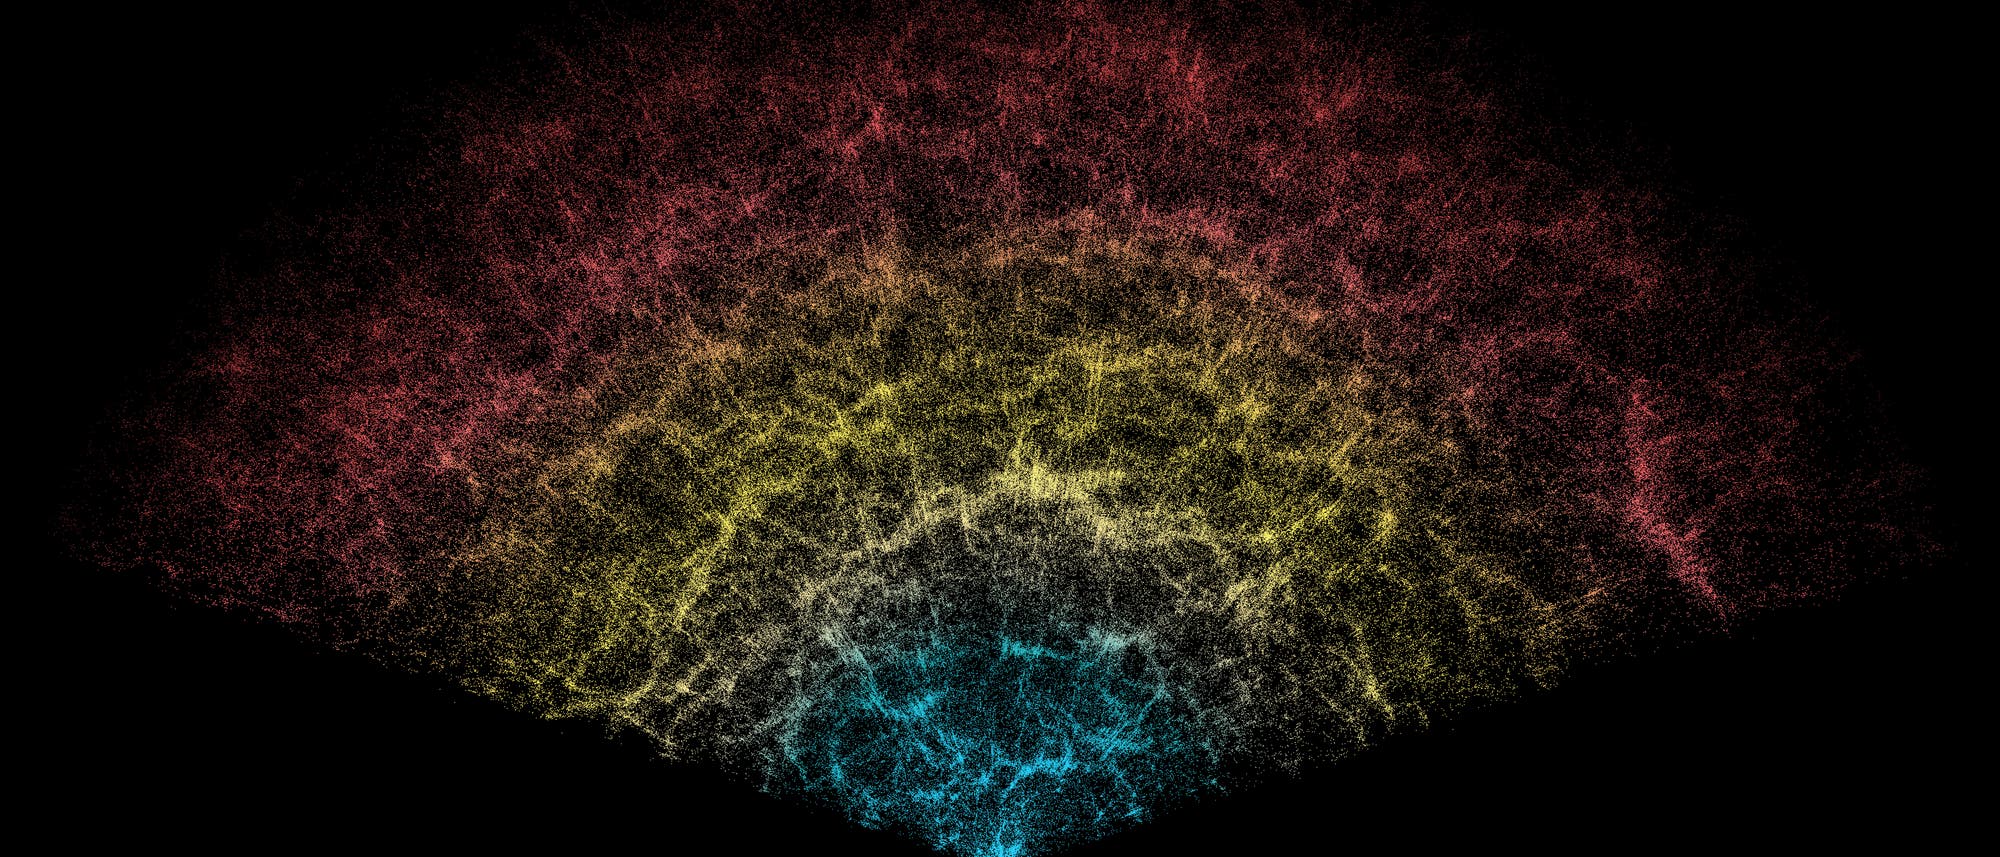 Ein Ausschnitt einer Karte aus unserem Universum mit unzähligen Punkten. Jeder Punkt stellt eine Galaxie dar. Es ergibt ein Muster, in dem sich die Punkte bevorzugt entlang von wabenförmigen Filamenten häufen und dazwischen weniger Galaxien liegen. 